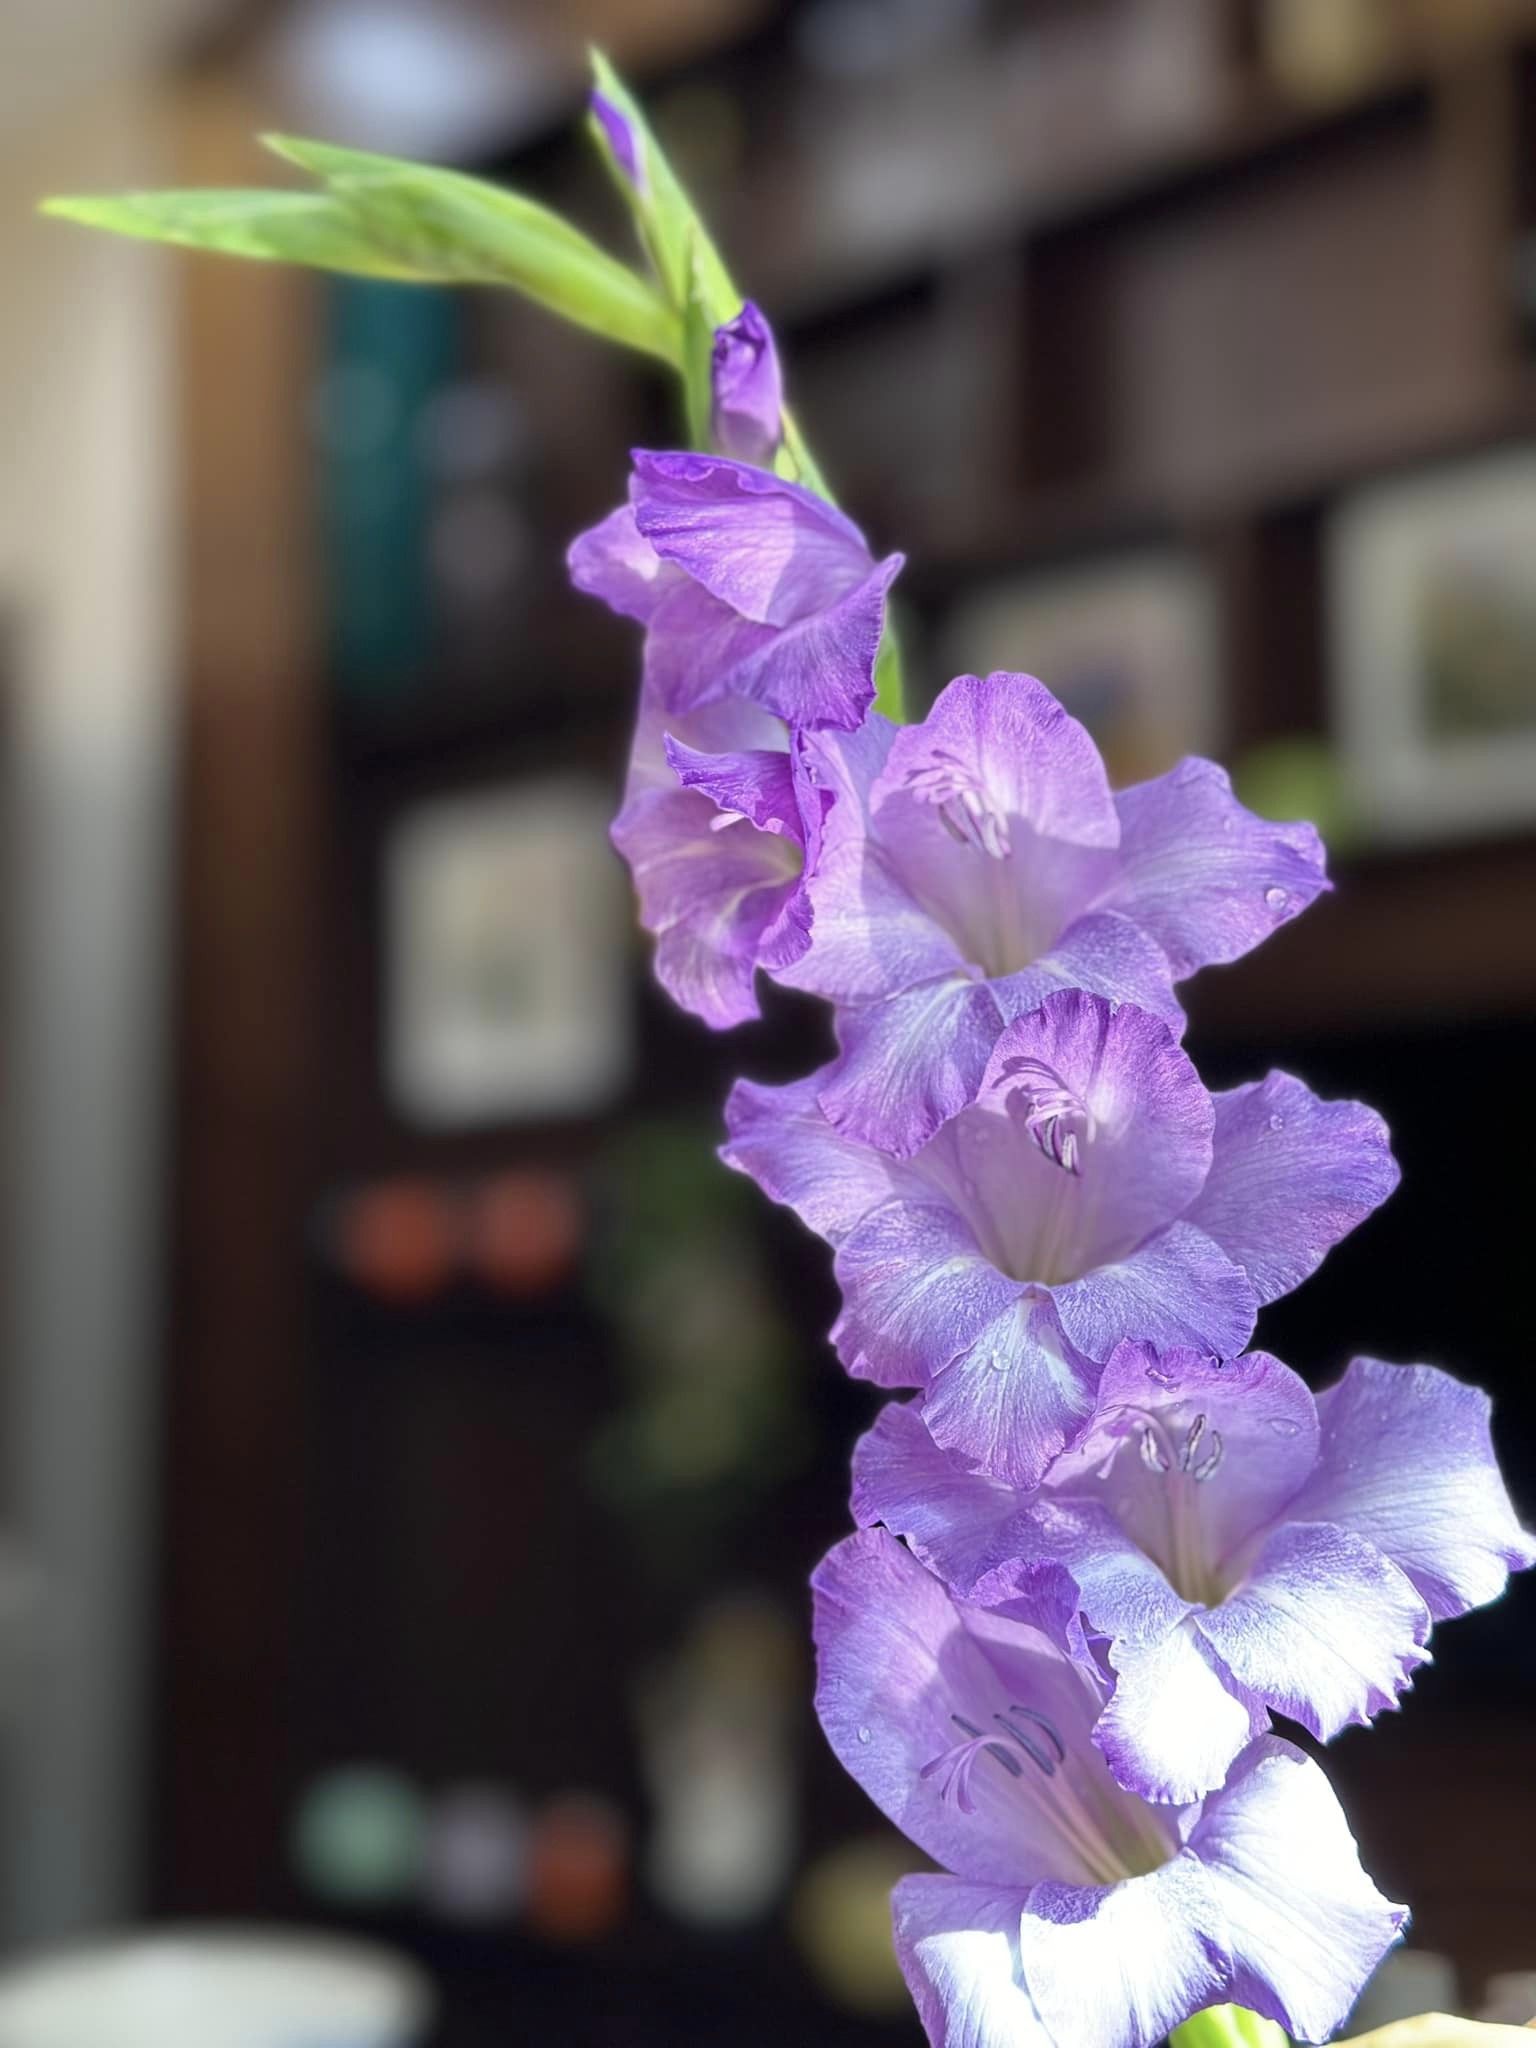 Loài hoa tượng trưng cho may mắn, Tết này cắm một bình trong nhà, đảm bảo cả năm vượng tài, vui vẻ, giá lại rẻ - Ảnh 23.